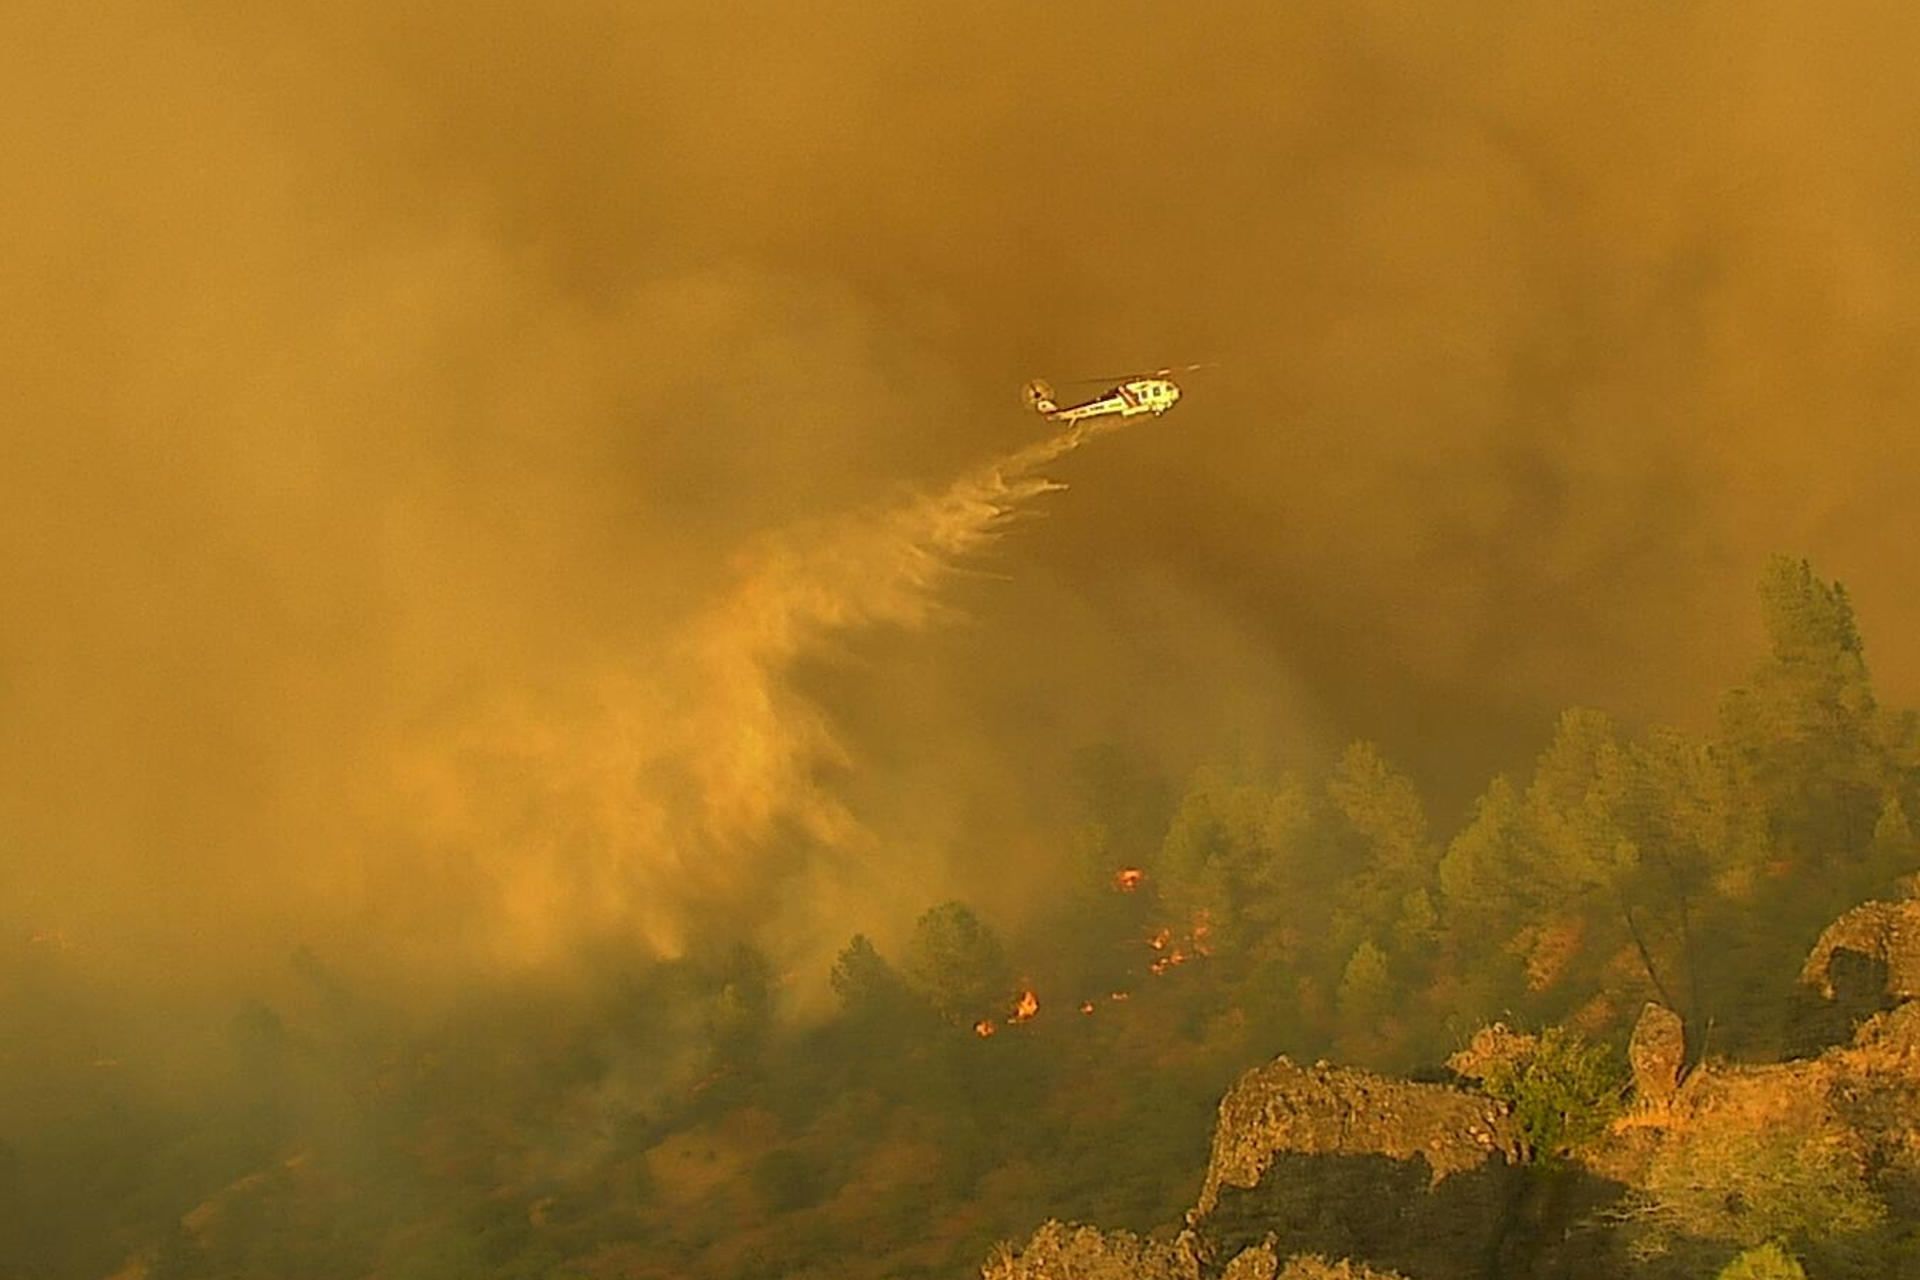 Fotografía sin fecha cedida por PG&E de un helicóptero esparciendo agua sobre un incendio en Park, condado Butte en California (EE.UU.). EFE/ PG&E /SOLO USO EDITORIAL/ SOLO DISPONIBLE PARA ILUSTRAR LA NOTICIA QUE ACOMPAÑA (CRÉDITO OBLIGATORIO)